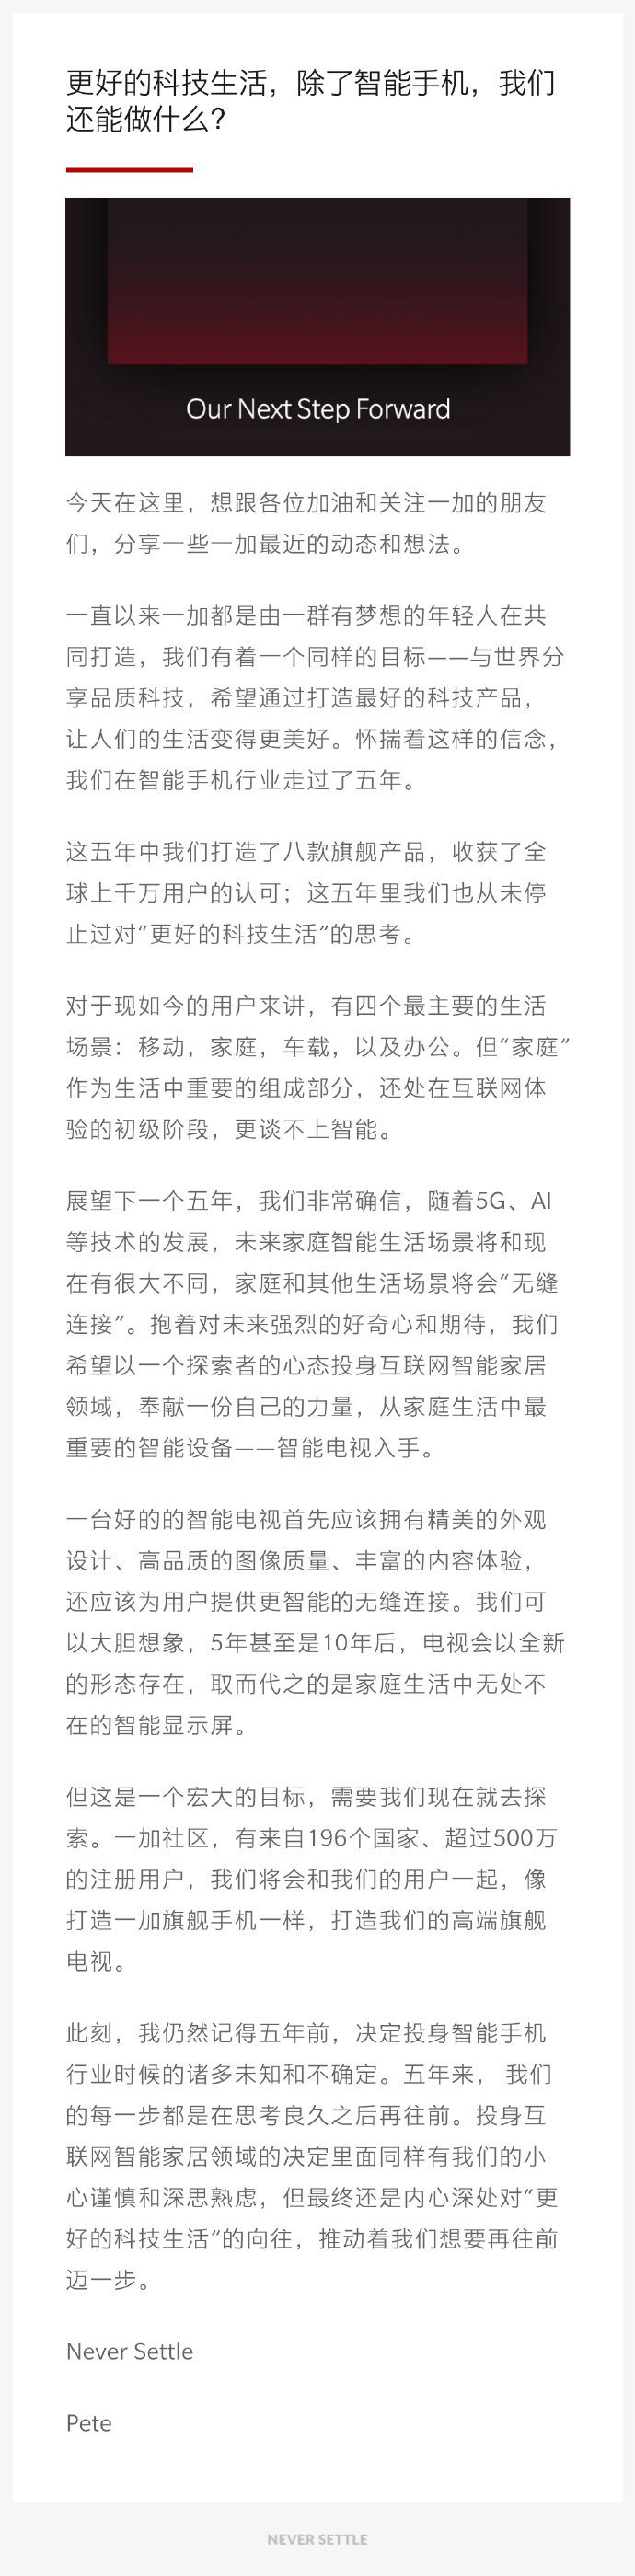 一加CEO刘作虎宣布进军智能电视 希望明年能交上满意作品